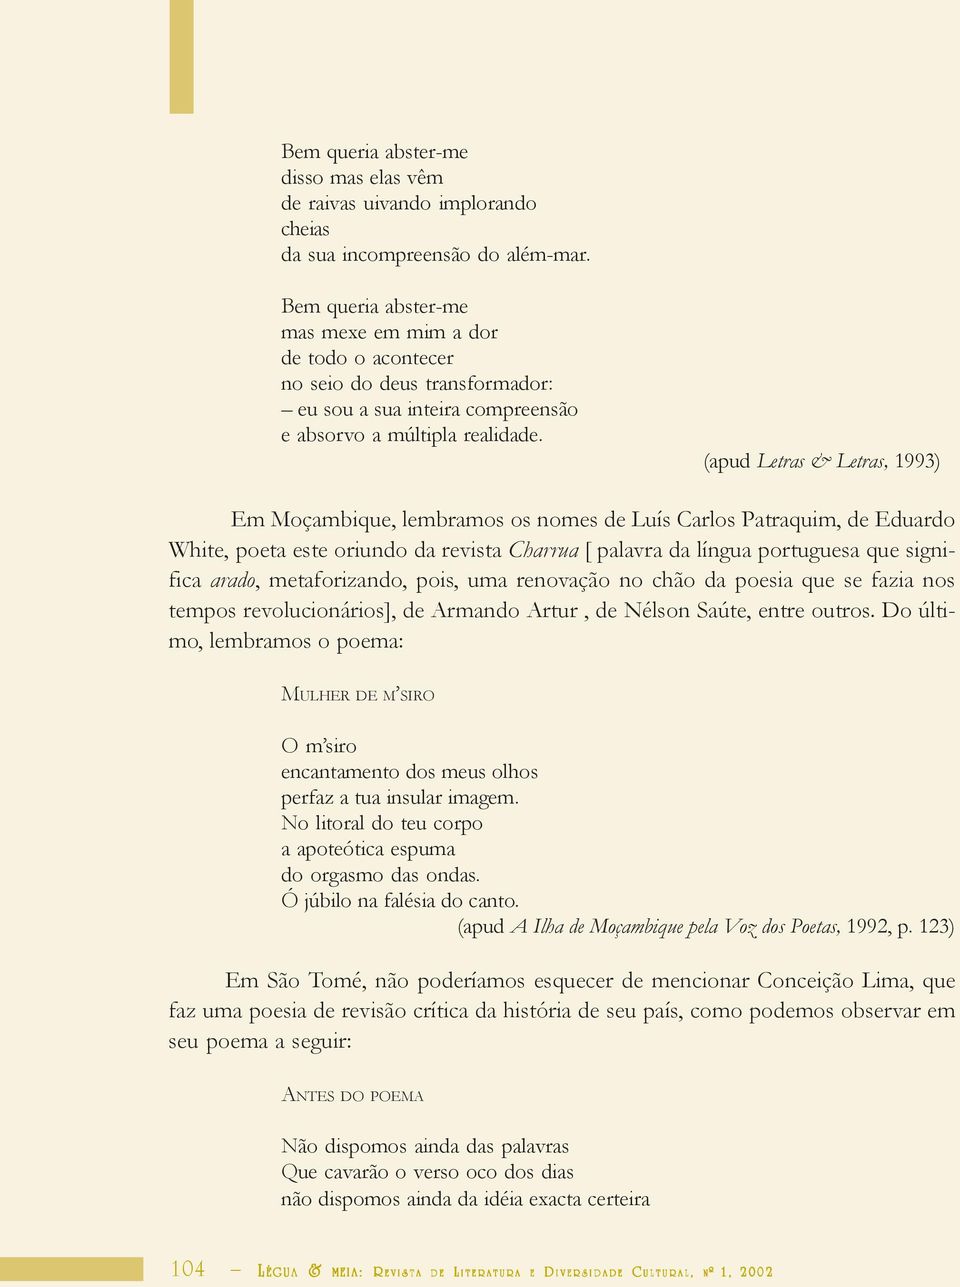 (apud Letras & Letras, 1993) Em Moçambique, lembramos os nomes de Luís Carlos Patraquim, de Eduardo White, poeta este oriundo da revista Charrua [ palavra da língua portuguesa que significa arado,